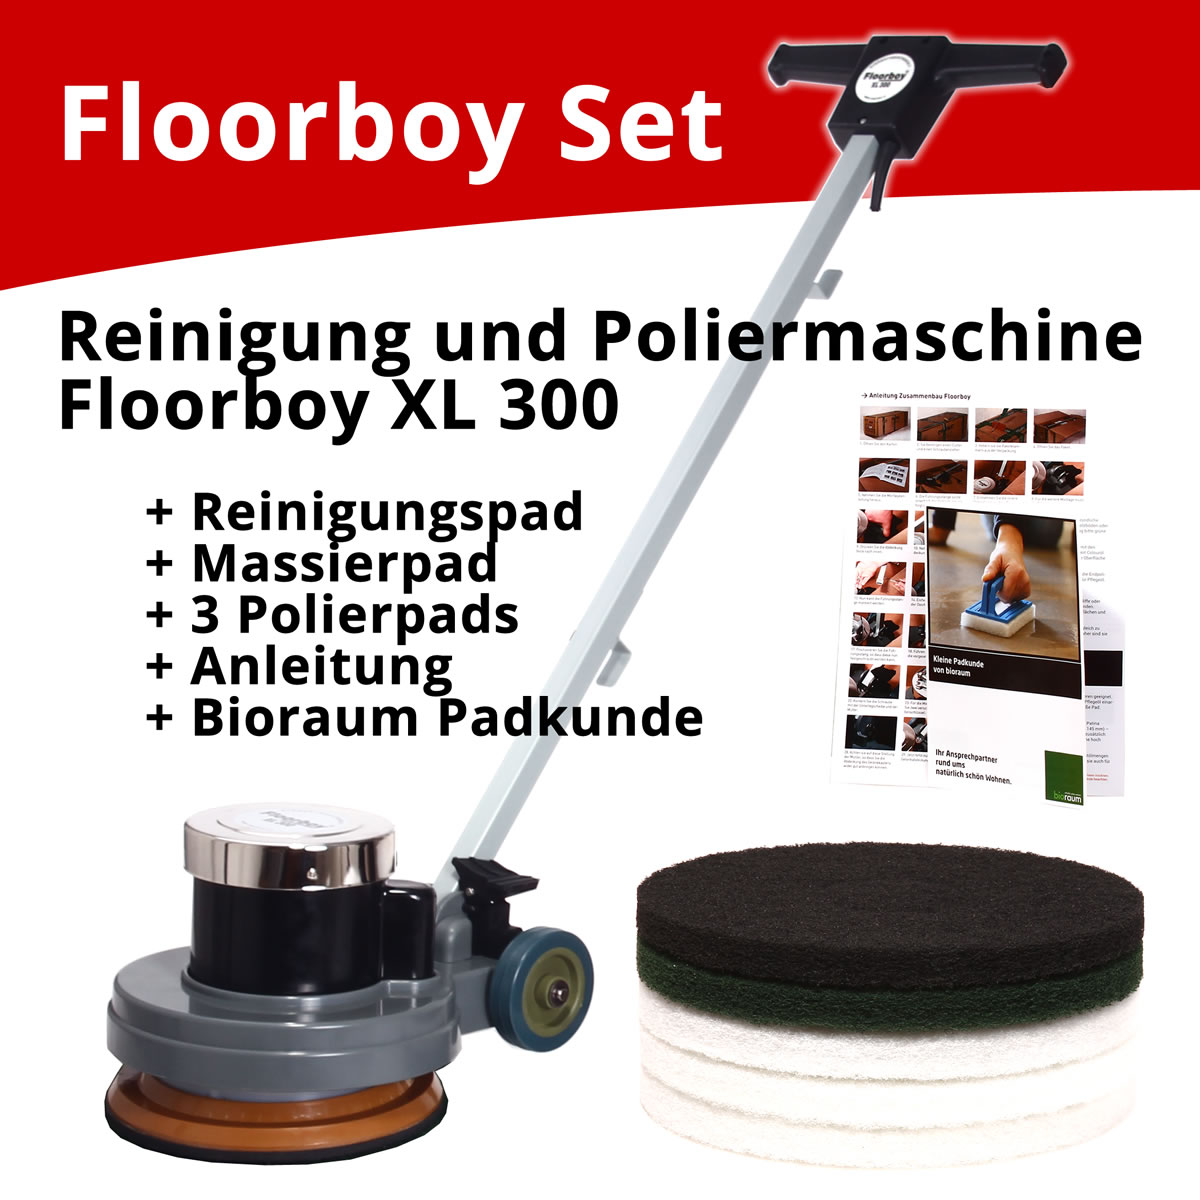 Floorboy Reinigungs- und Poliermaschinen Set mit Anleitungen, Pads und Padkunde von Bioraum